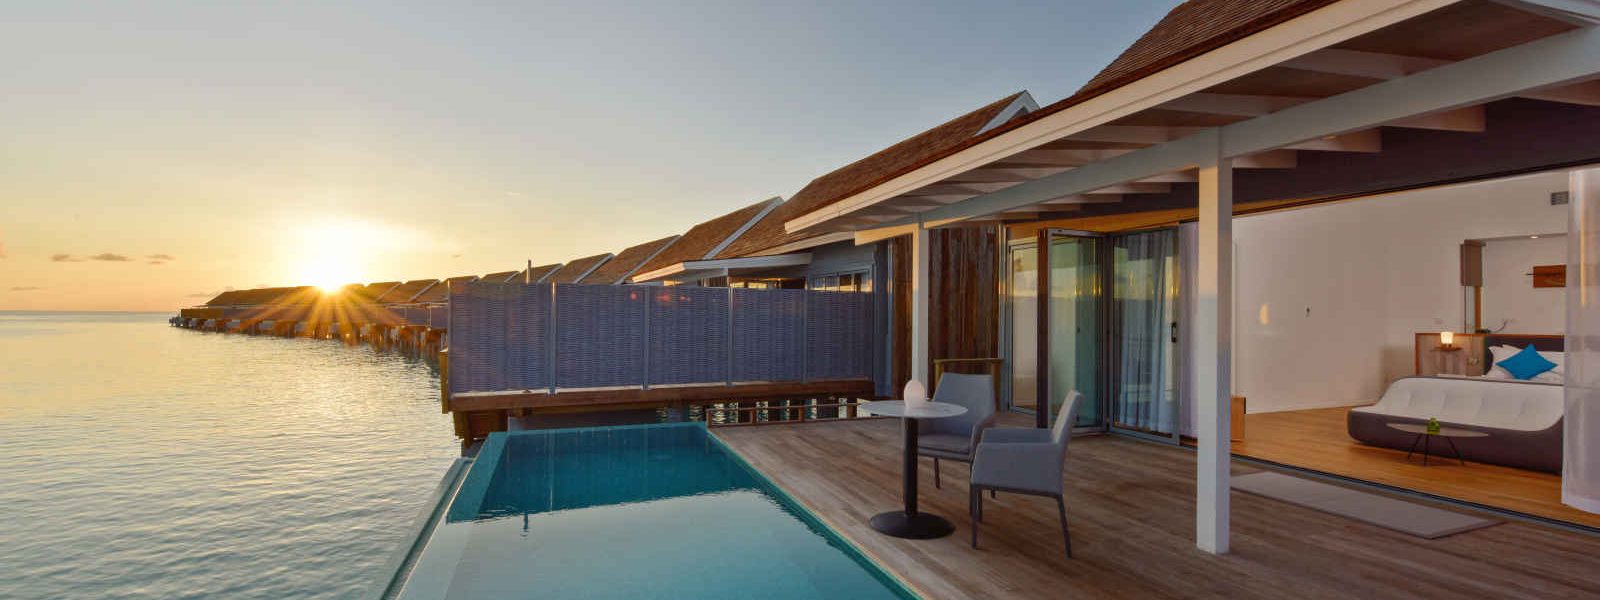 Villa sur pilotis coucher de soleil avec piscine